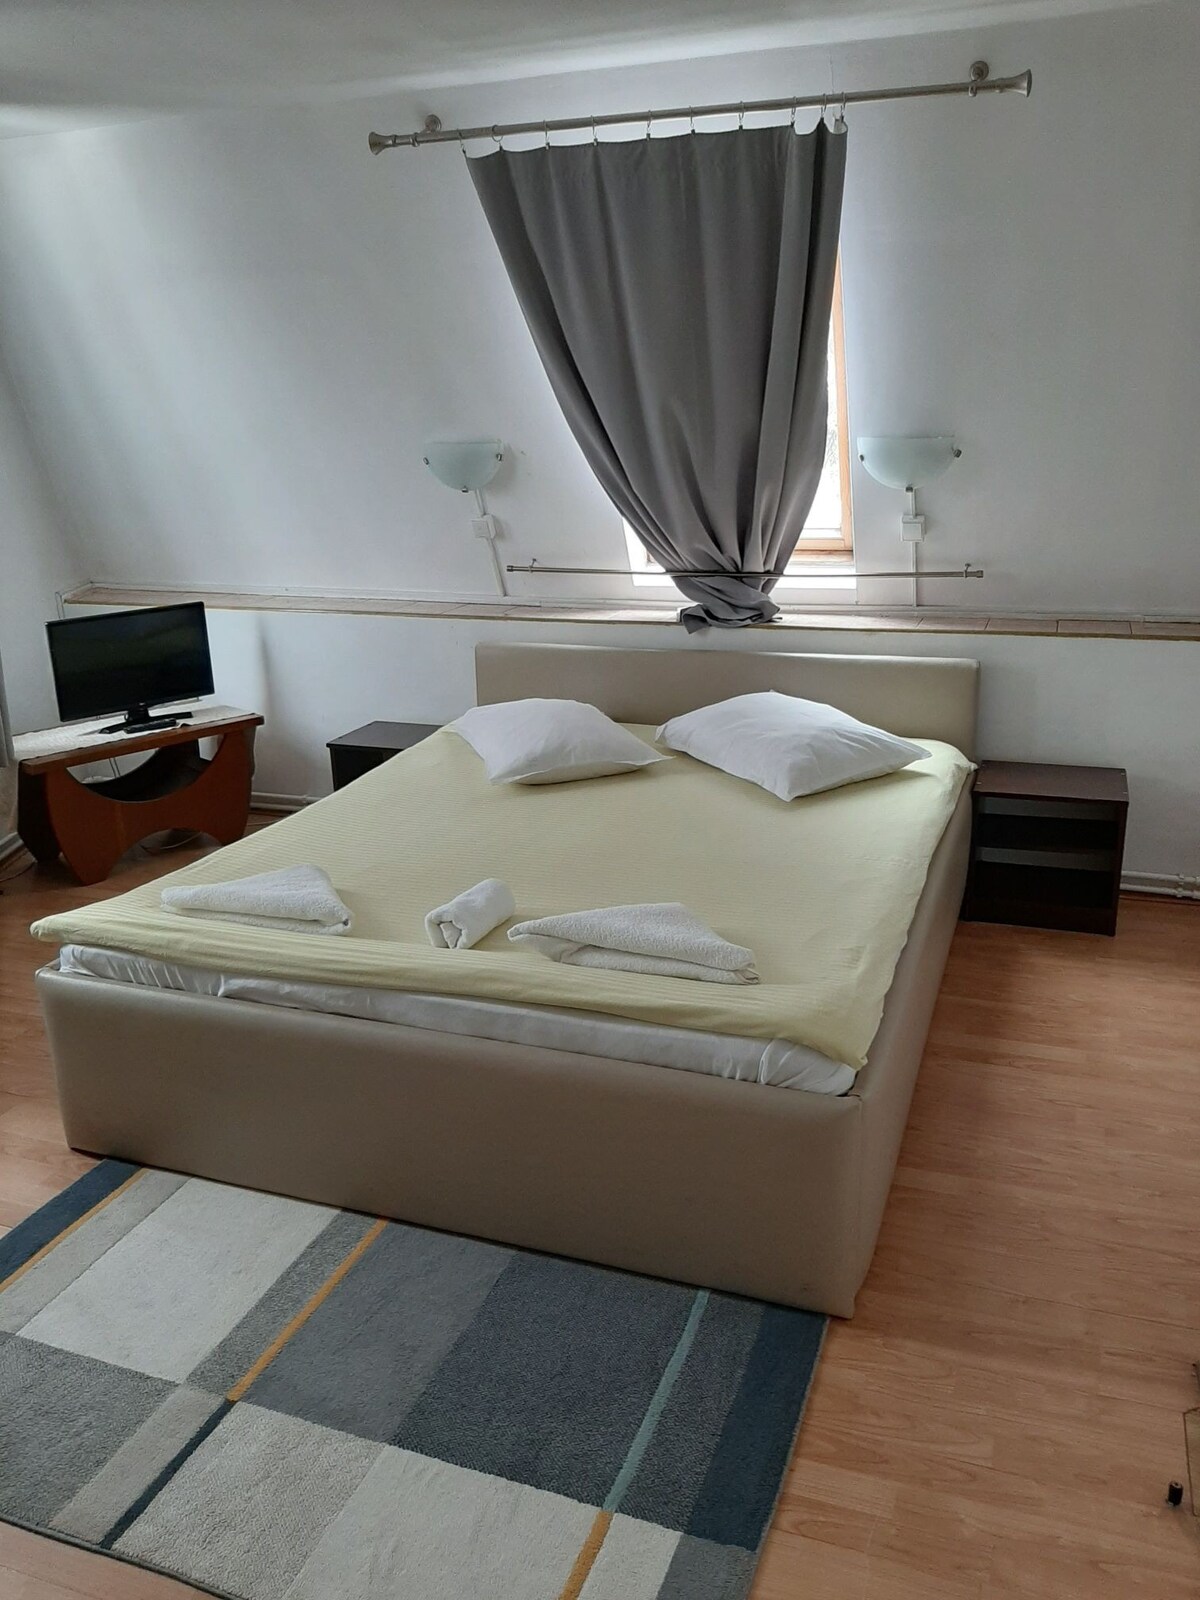 位于Cluj市中心的房间。